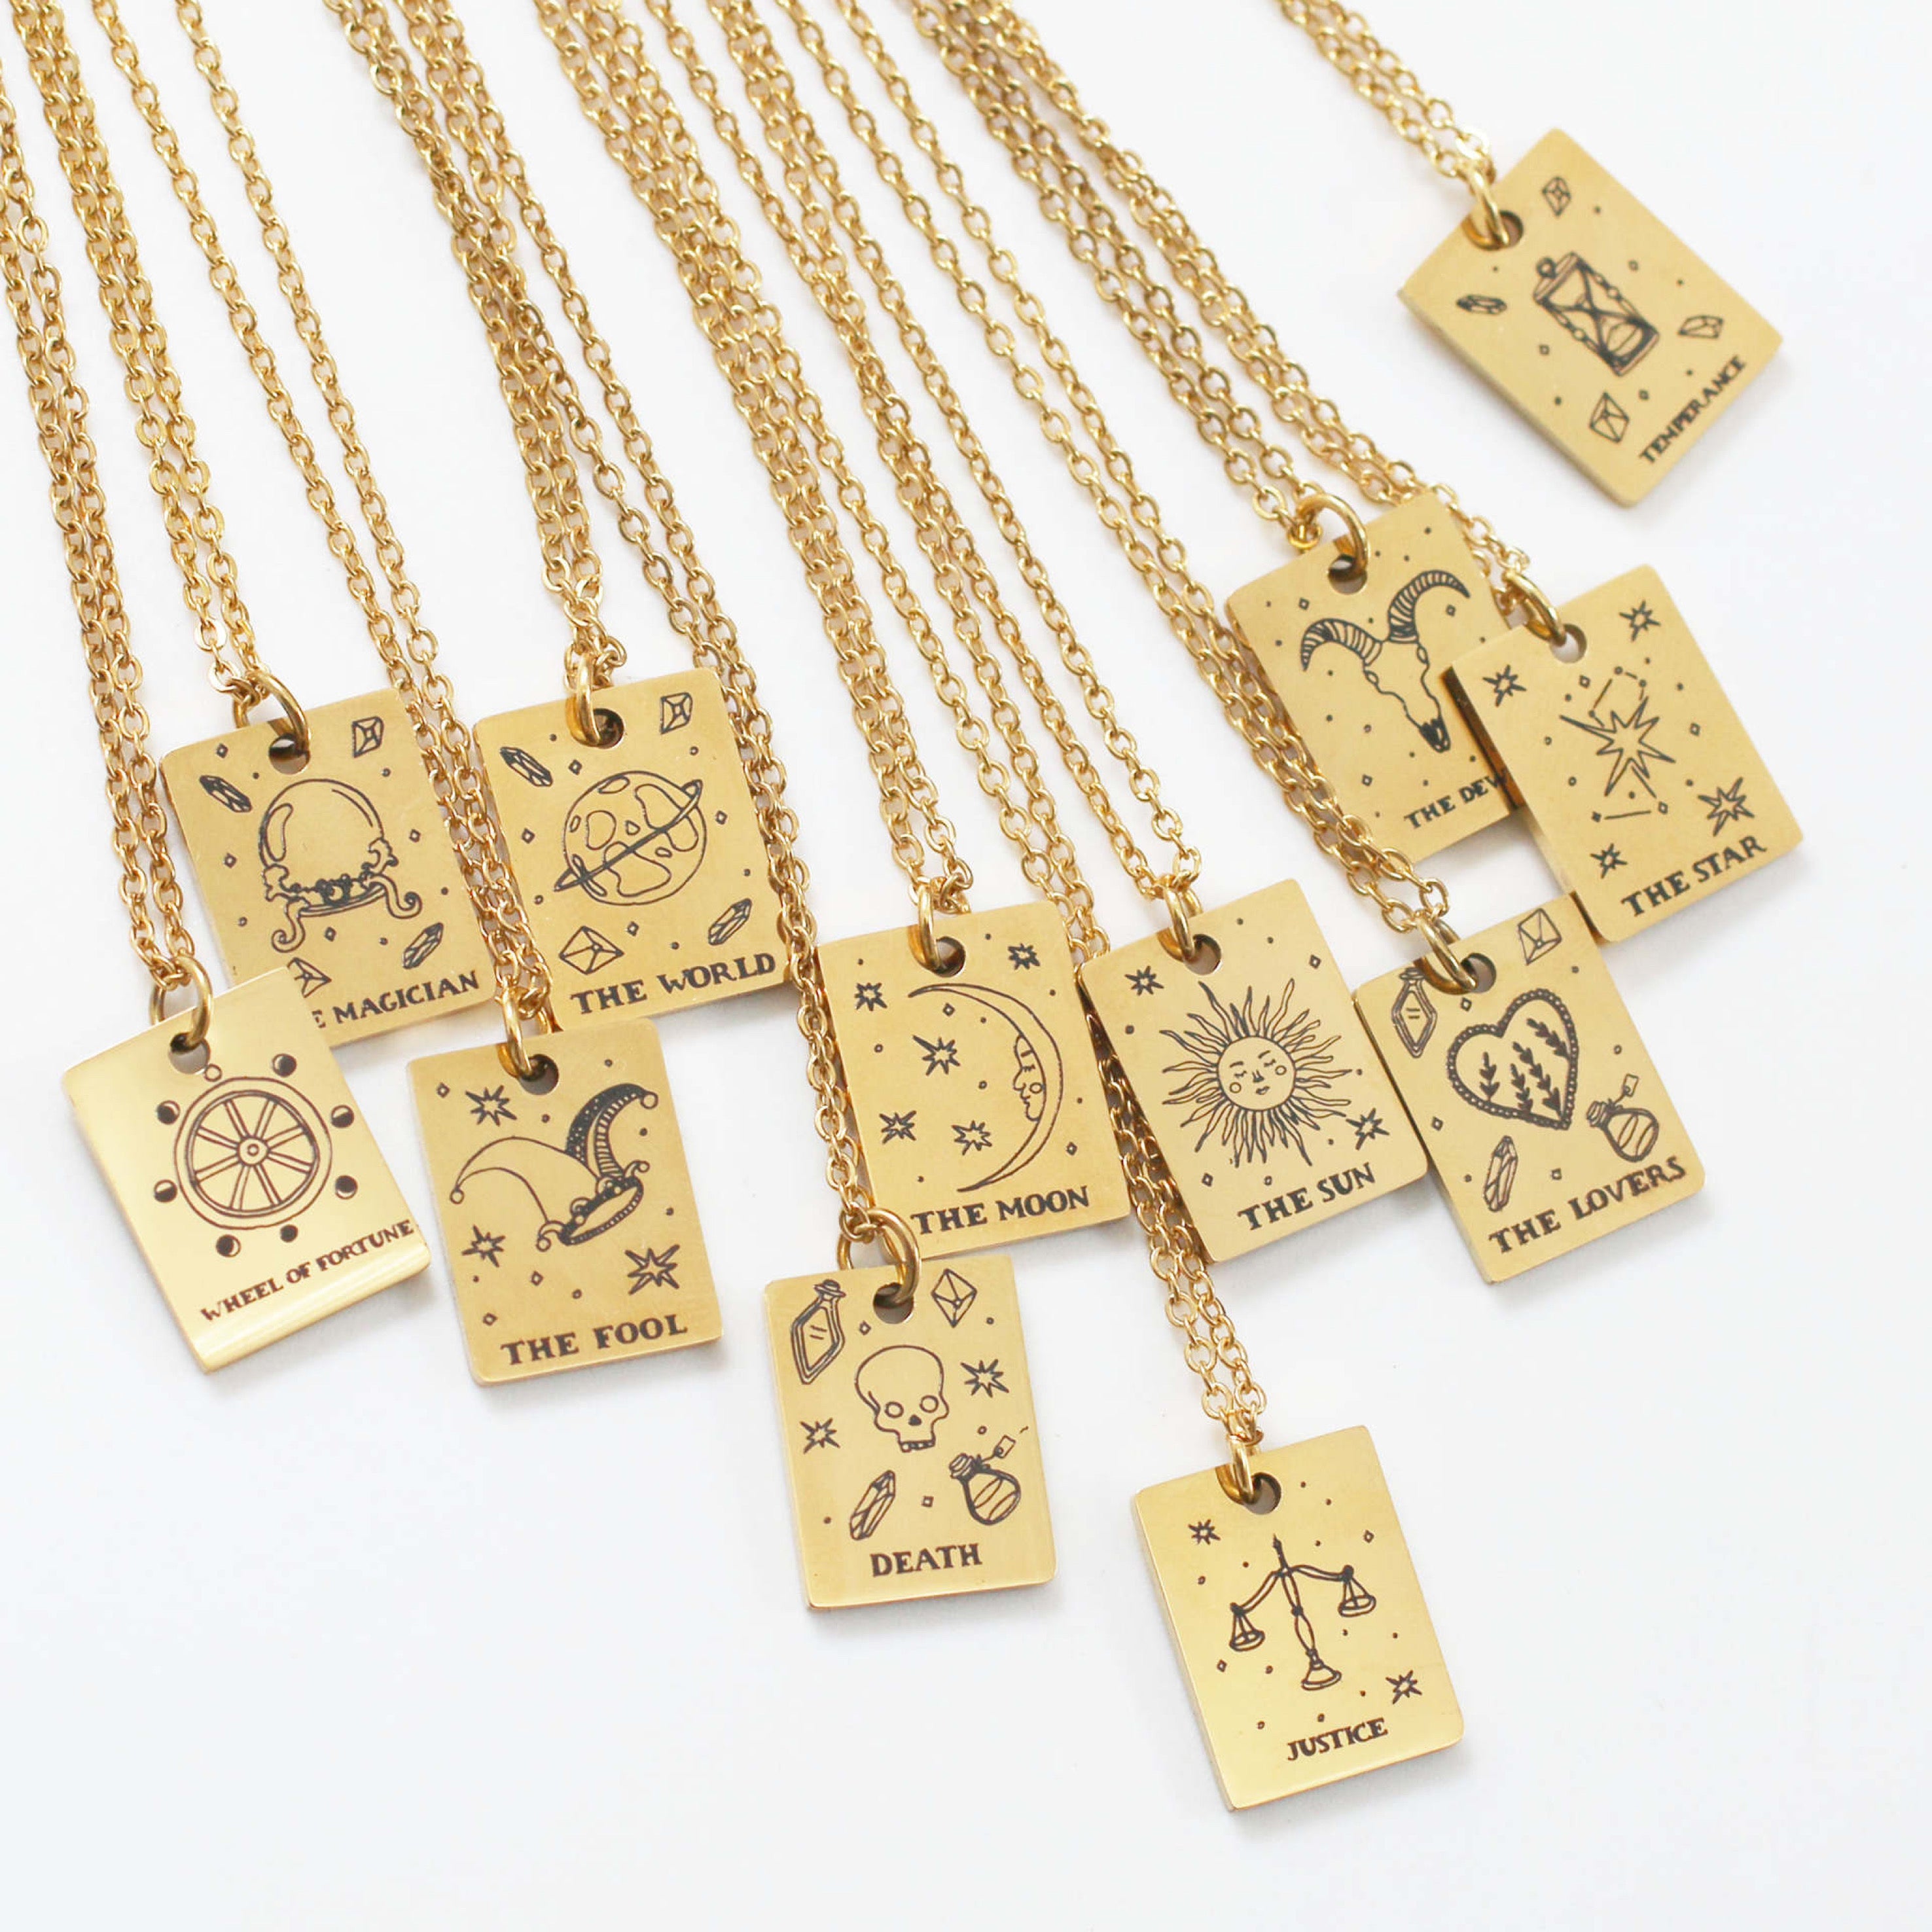 Gold Tarot card necklace - The moon Tarot card pendant